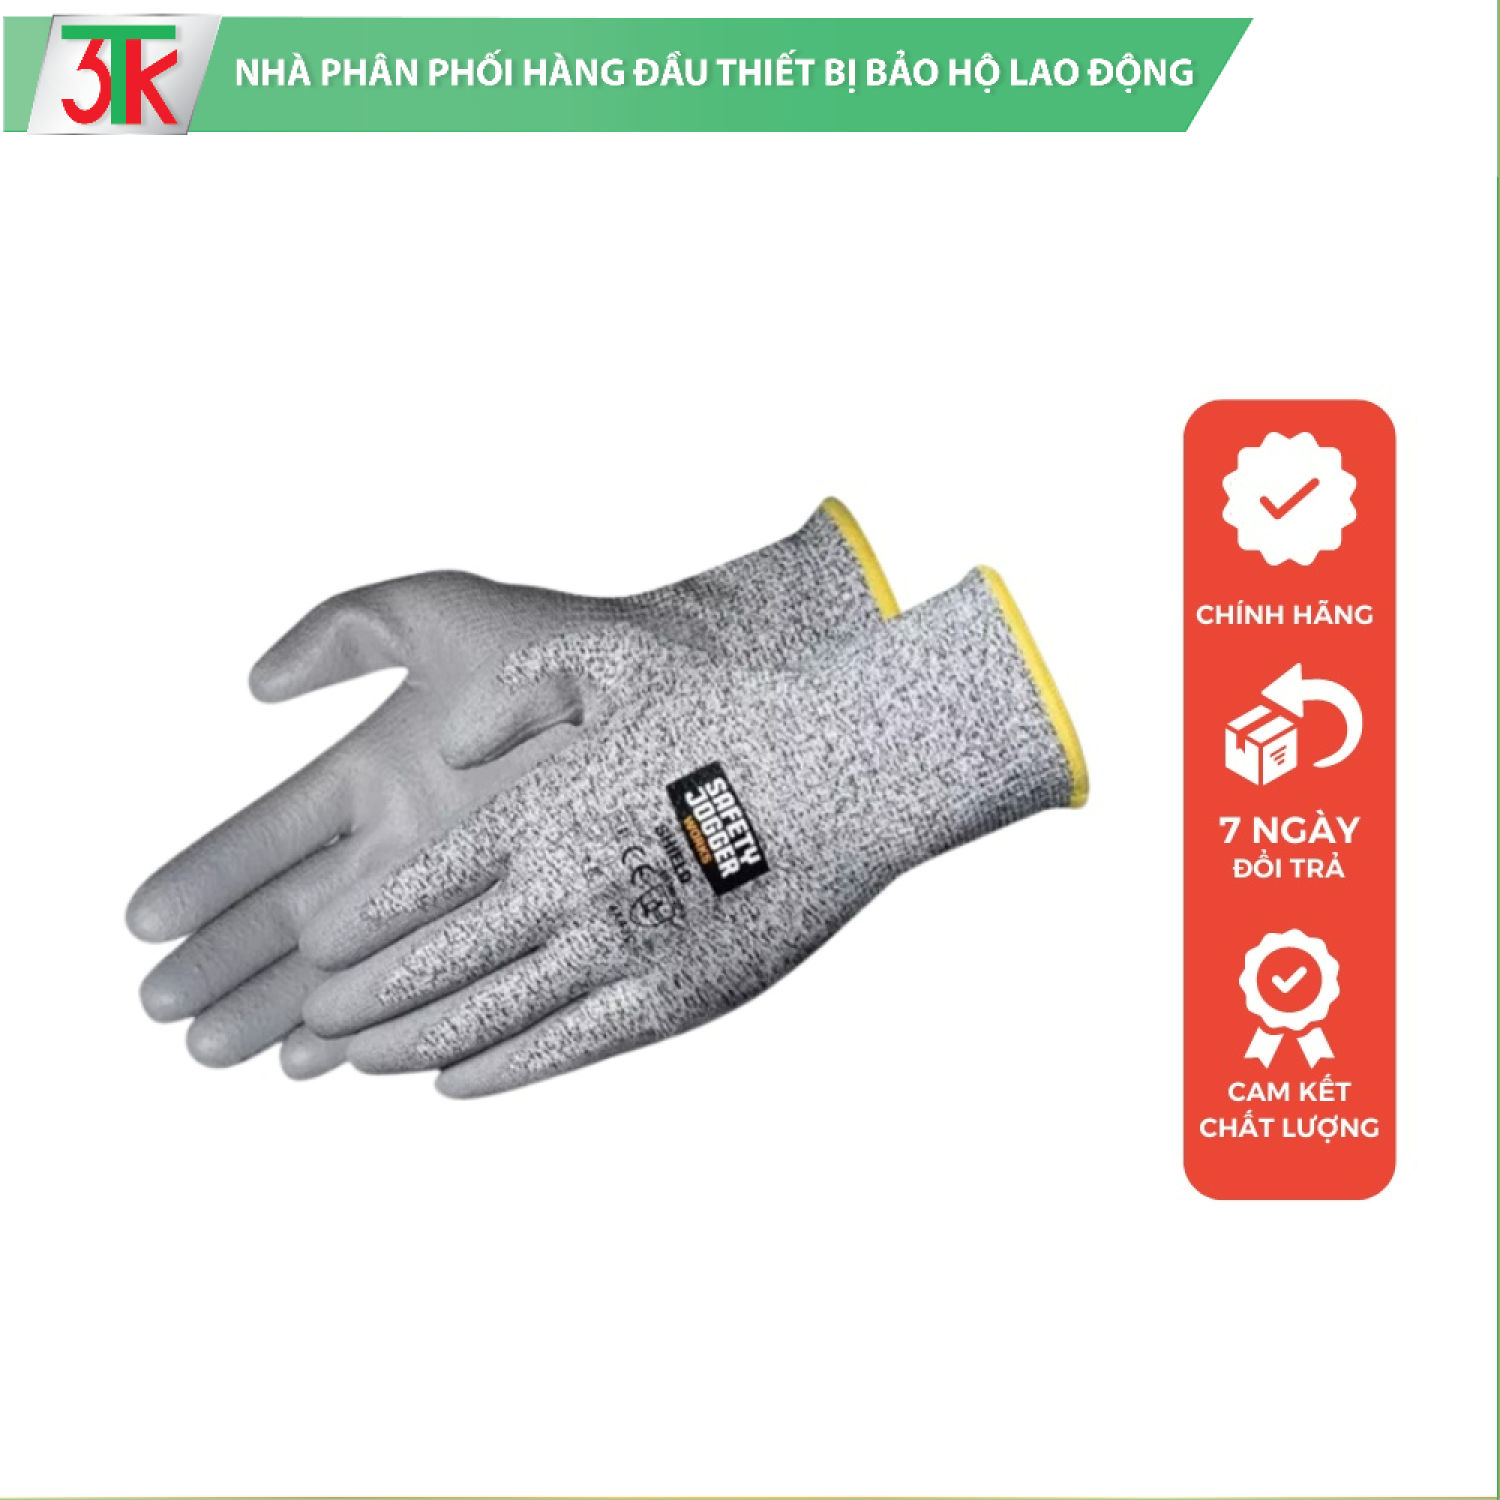 [Chính hãng] Shield Găng tay bảo hộ Safety jogger chống cắt cấp độ 5 (C) Bao tay lớp phủ pu dày chống đâm xuyên, rách